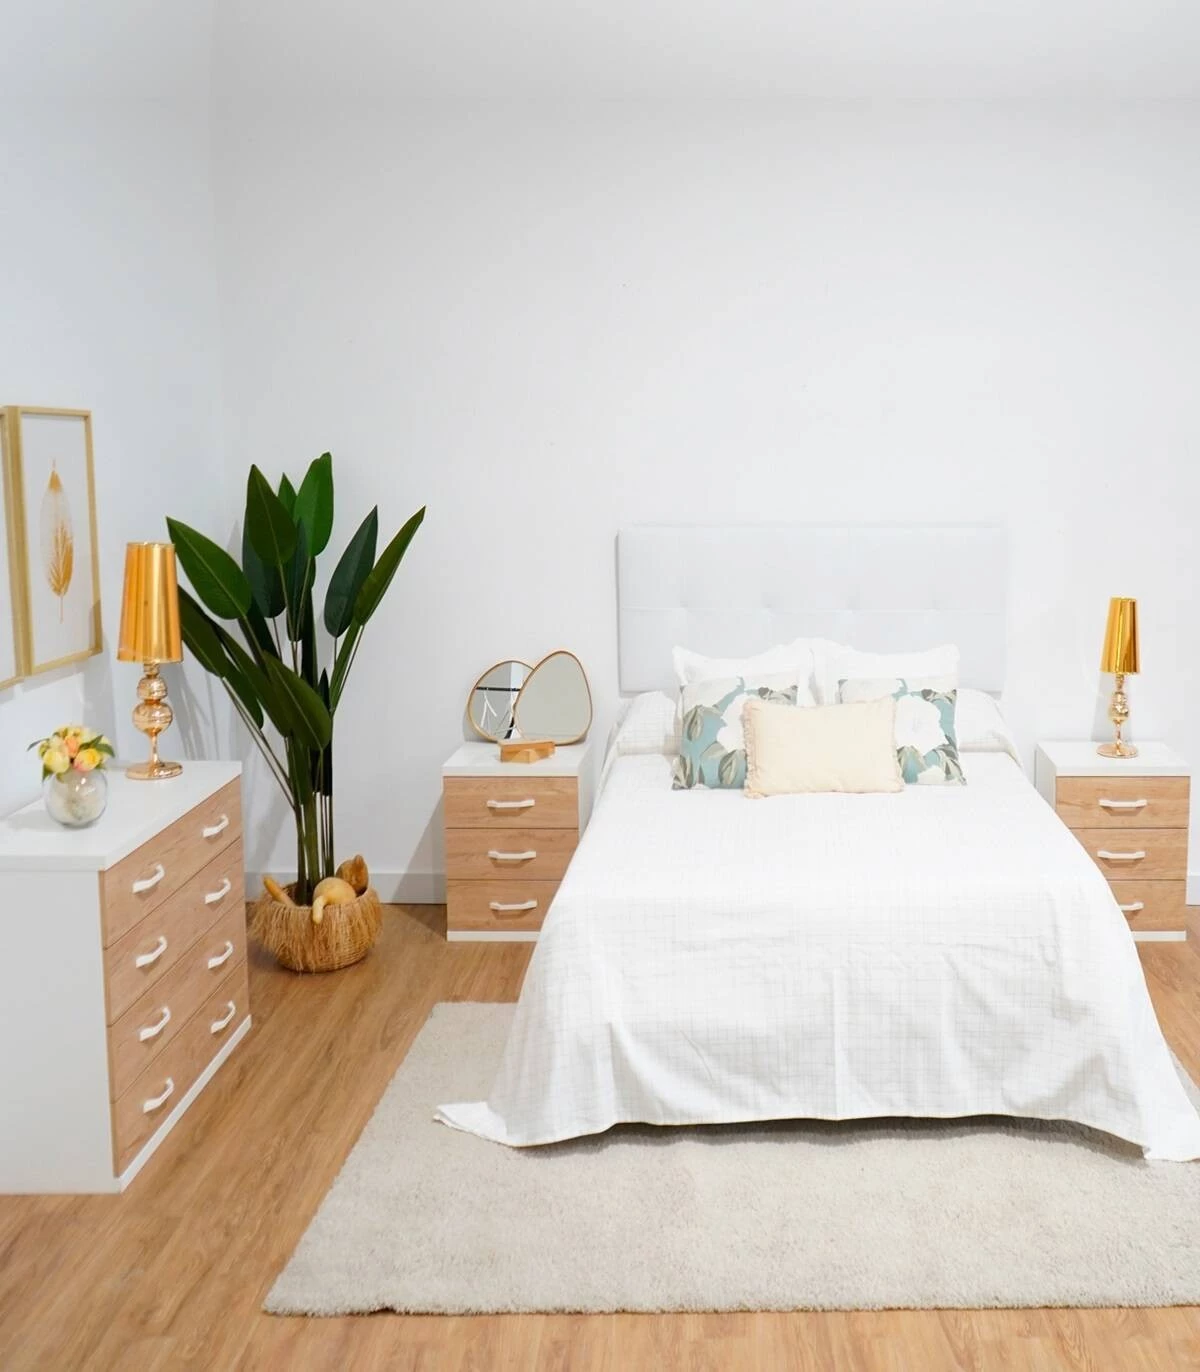 Habitación de matrimonio con mobiliario color blanco,diseño sencillo